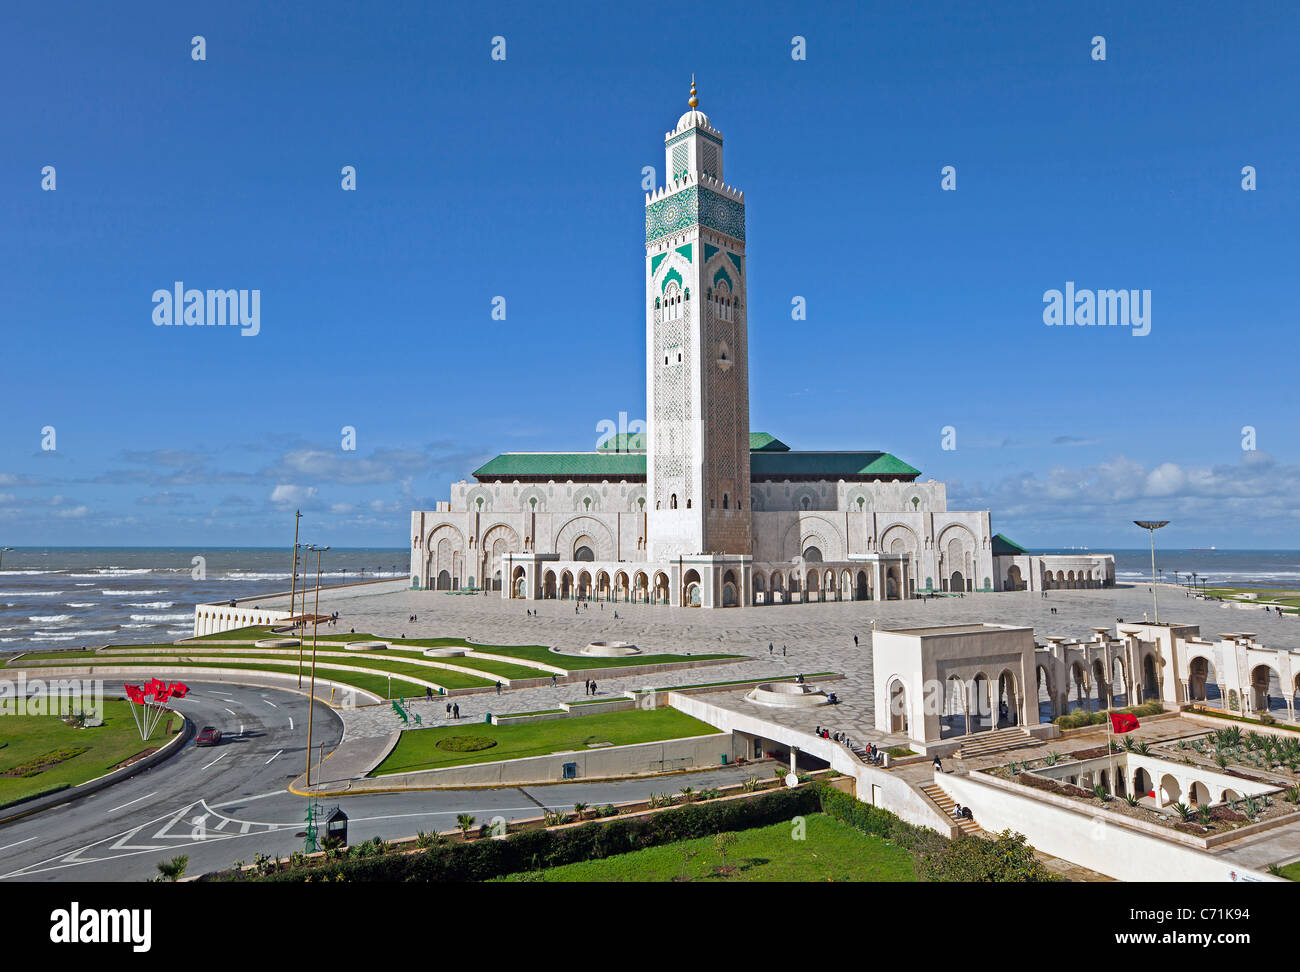 Mosquée Hassan II, la troisième plus grande mosquée du monde, Casablanca, Maroc, Afrique du Nord Banque D'Images